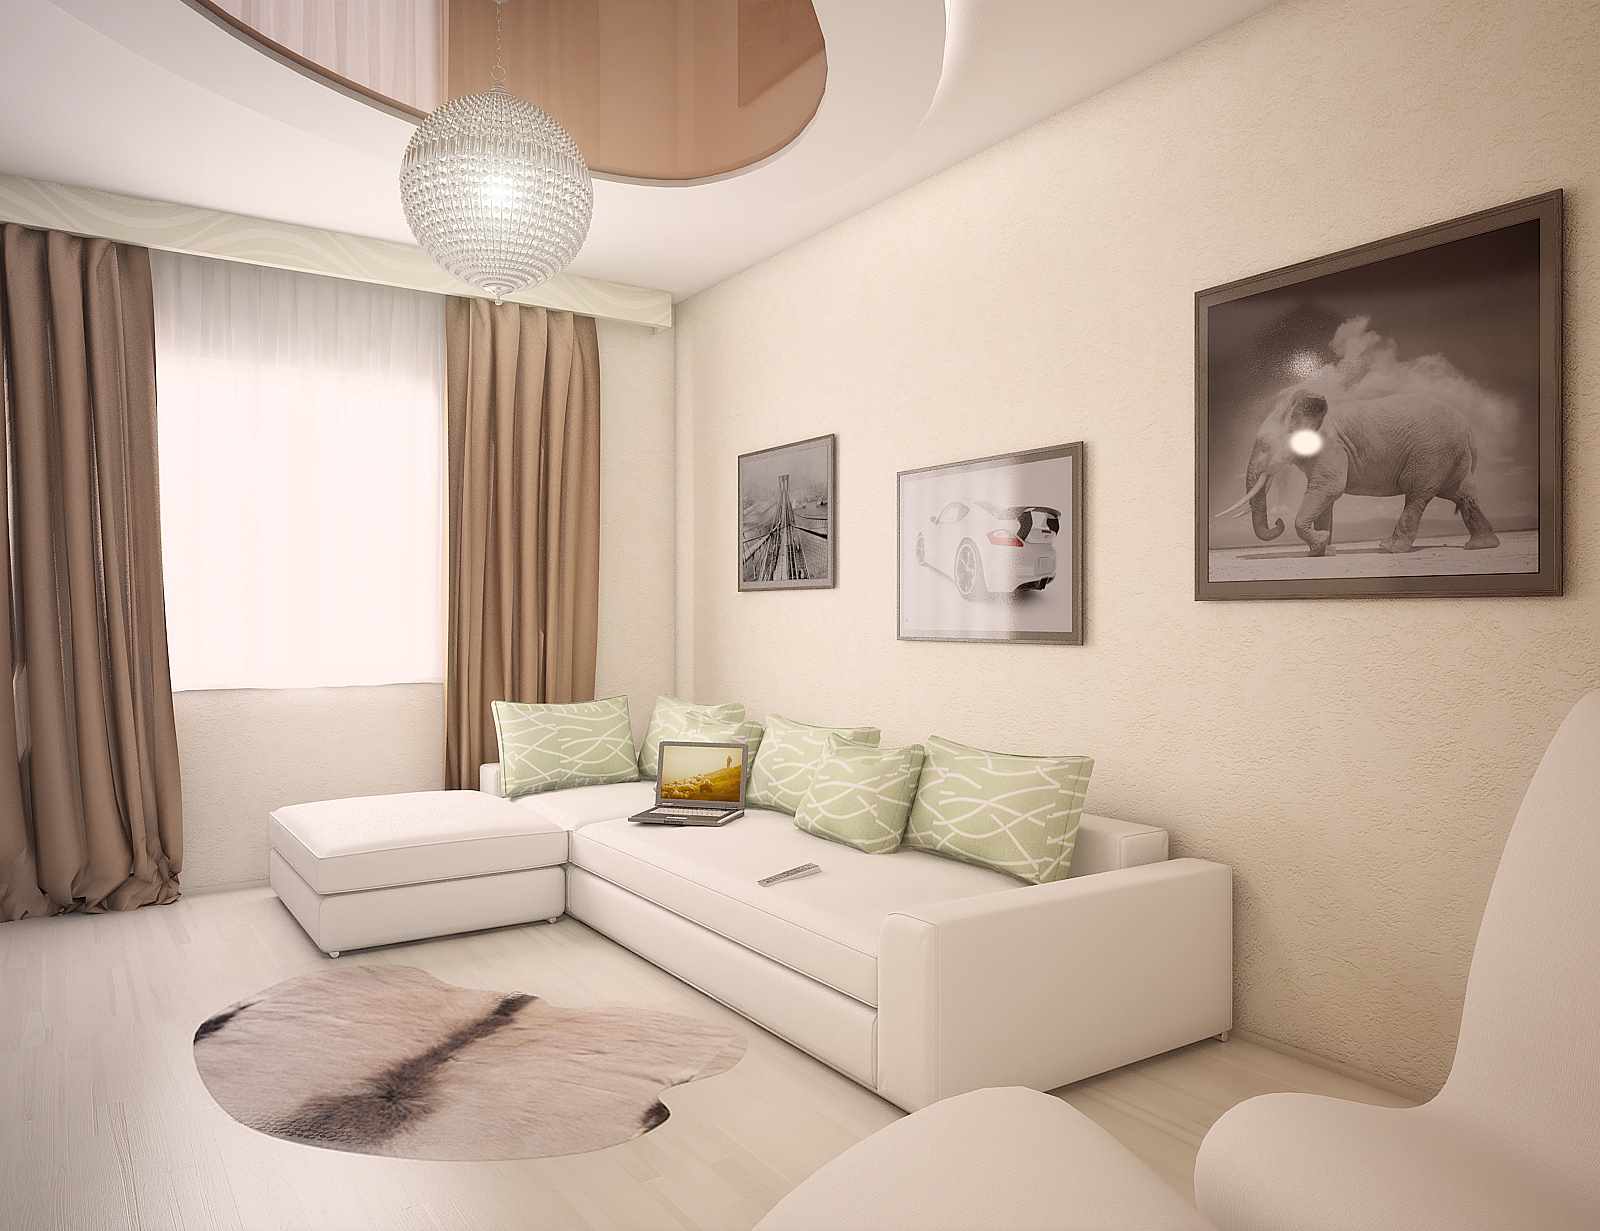 Гостиные 12 кв. м. — примеры дизайна интерьера и варианты цветового оформления гостиной (115 фото)